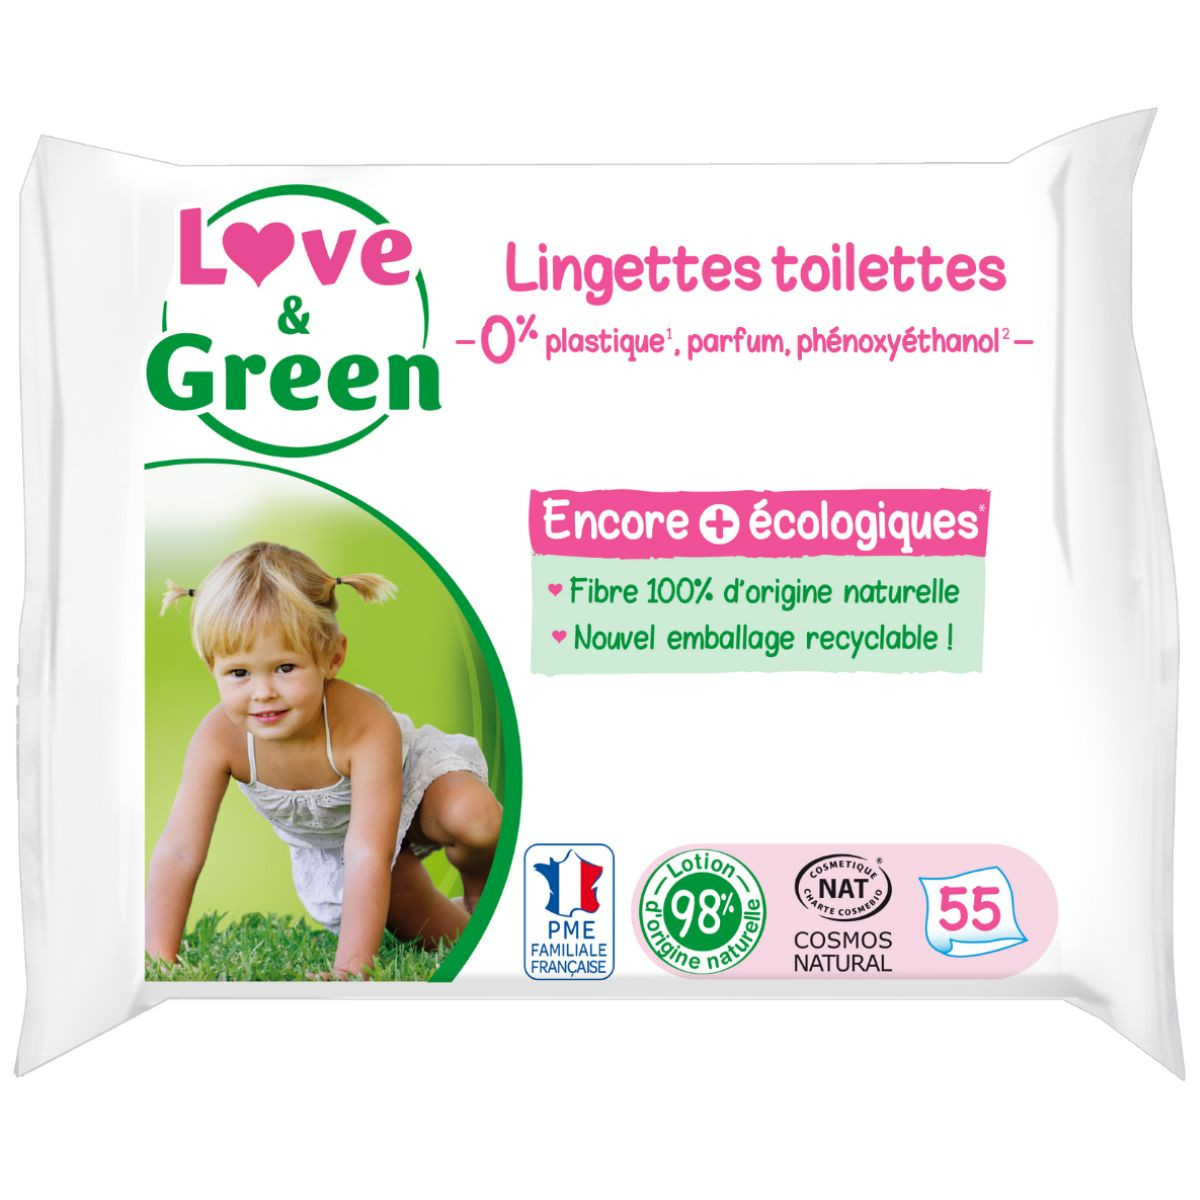 lingette a la fleur d oranger - love & green - 64